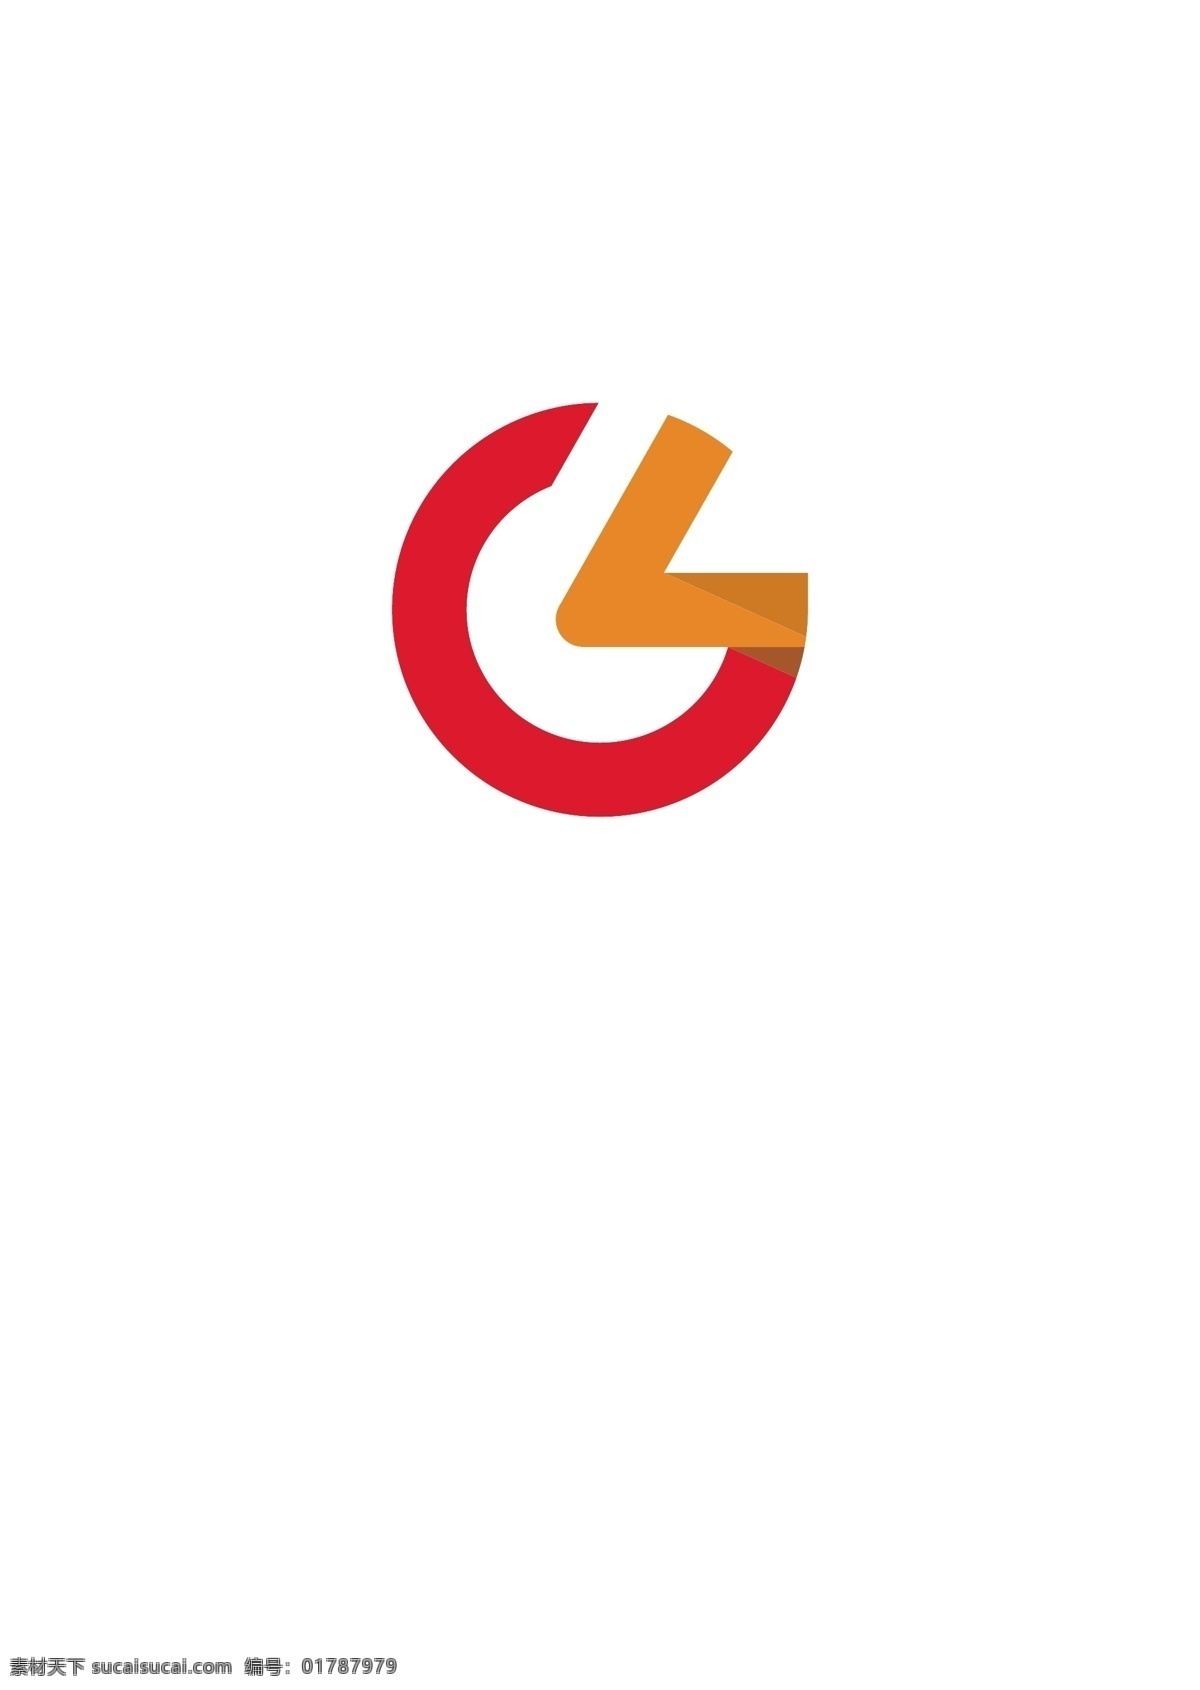 gl 企业logo 科技 企业 logo 橙色 阳光 大气 简约 工业 化工 标志图标 标志